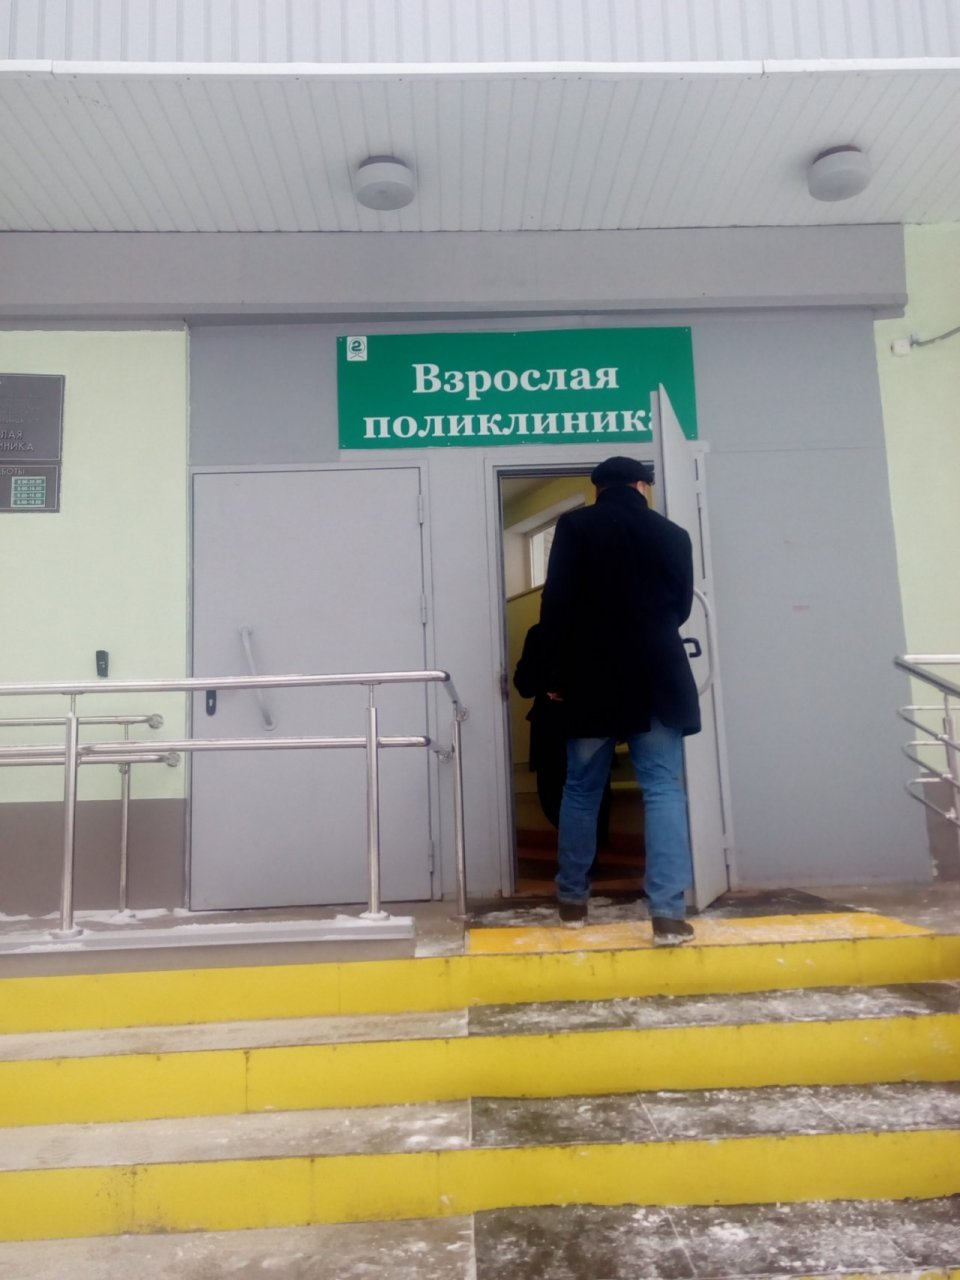 Пойдем в уборщики или в санитары: медики обеспокоены объединением больниц в Ярославле